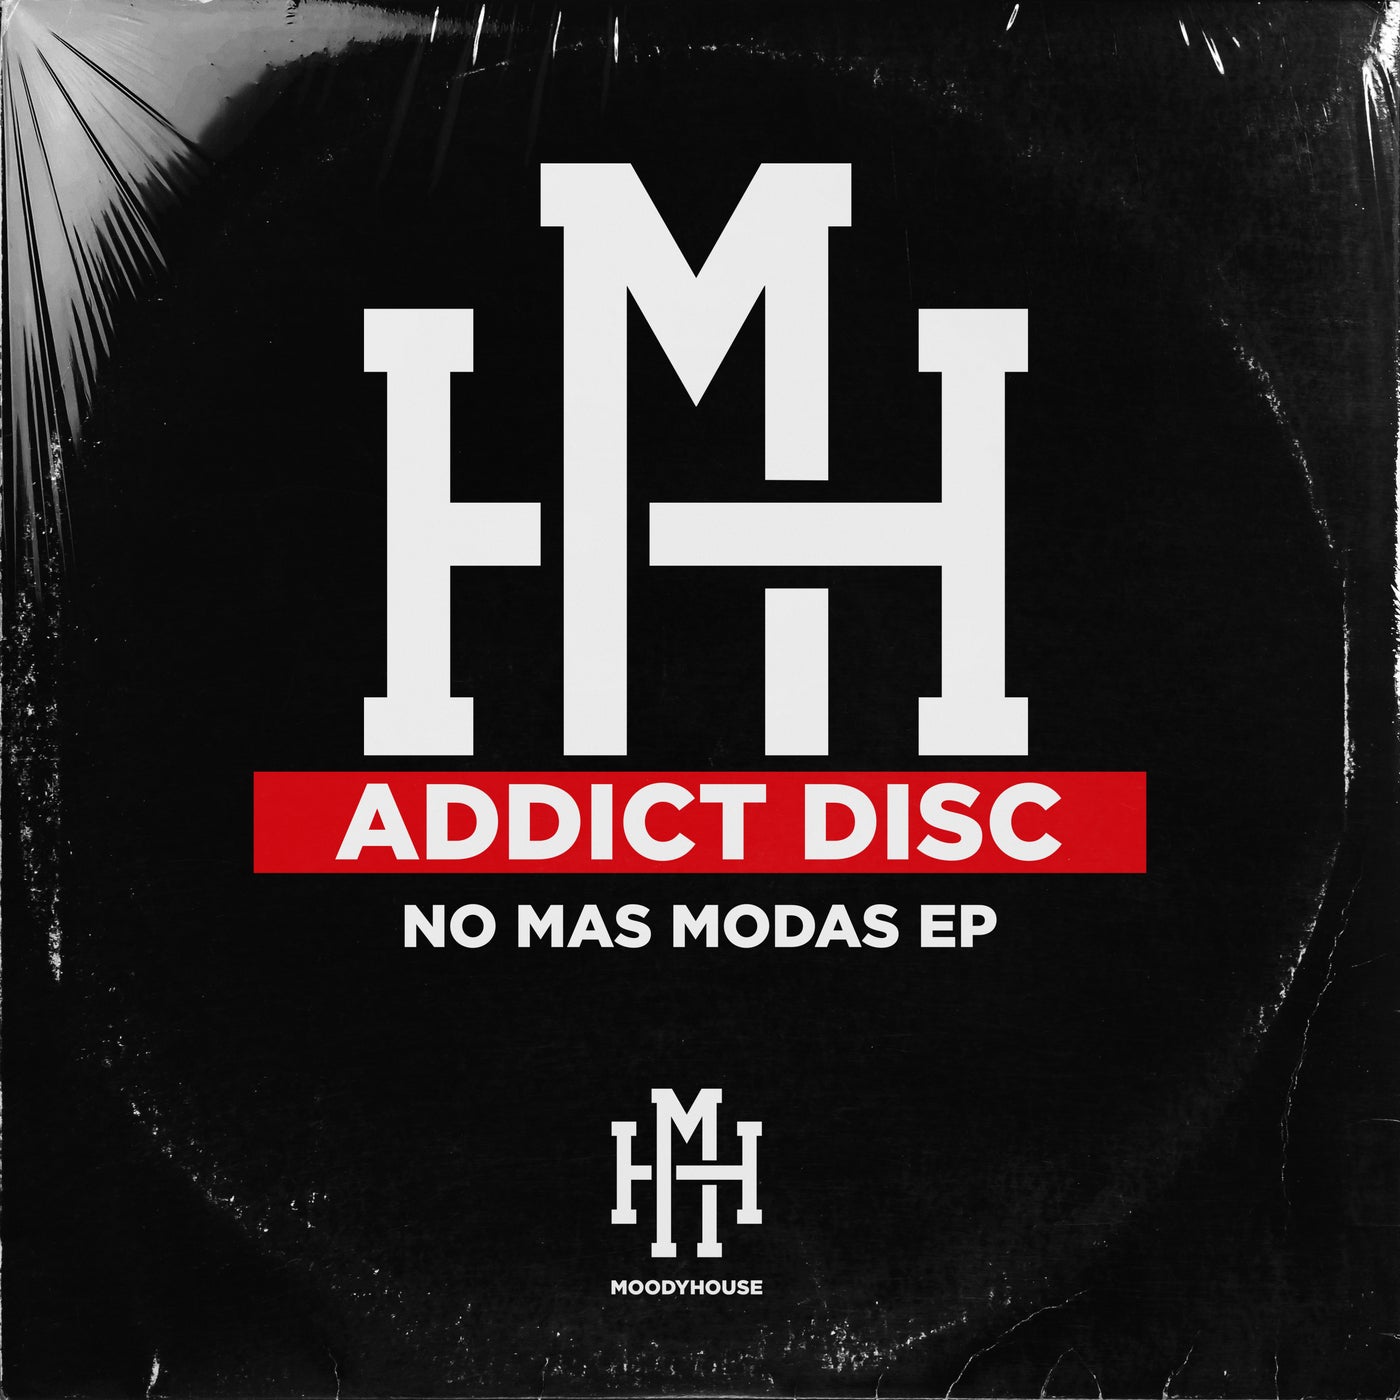 Addict Disc - No Mas Modas EP [MHR149]